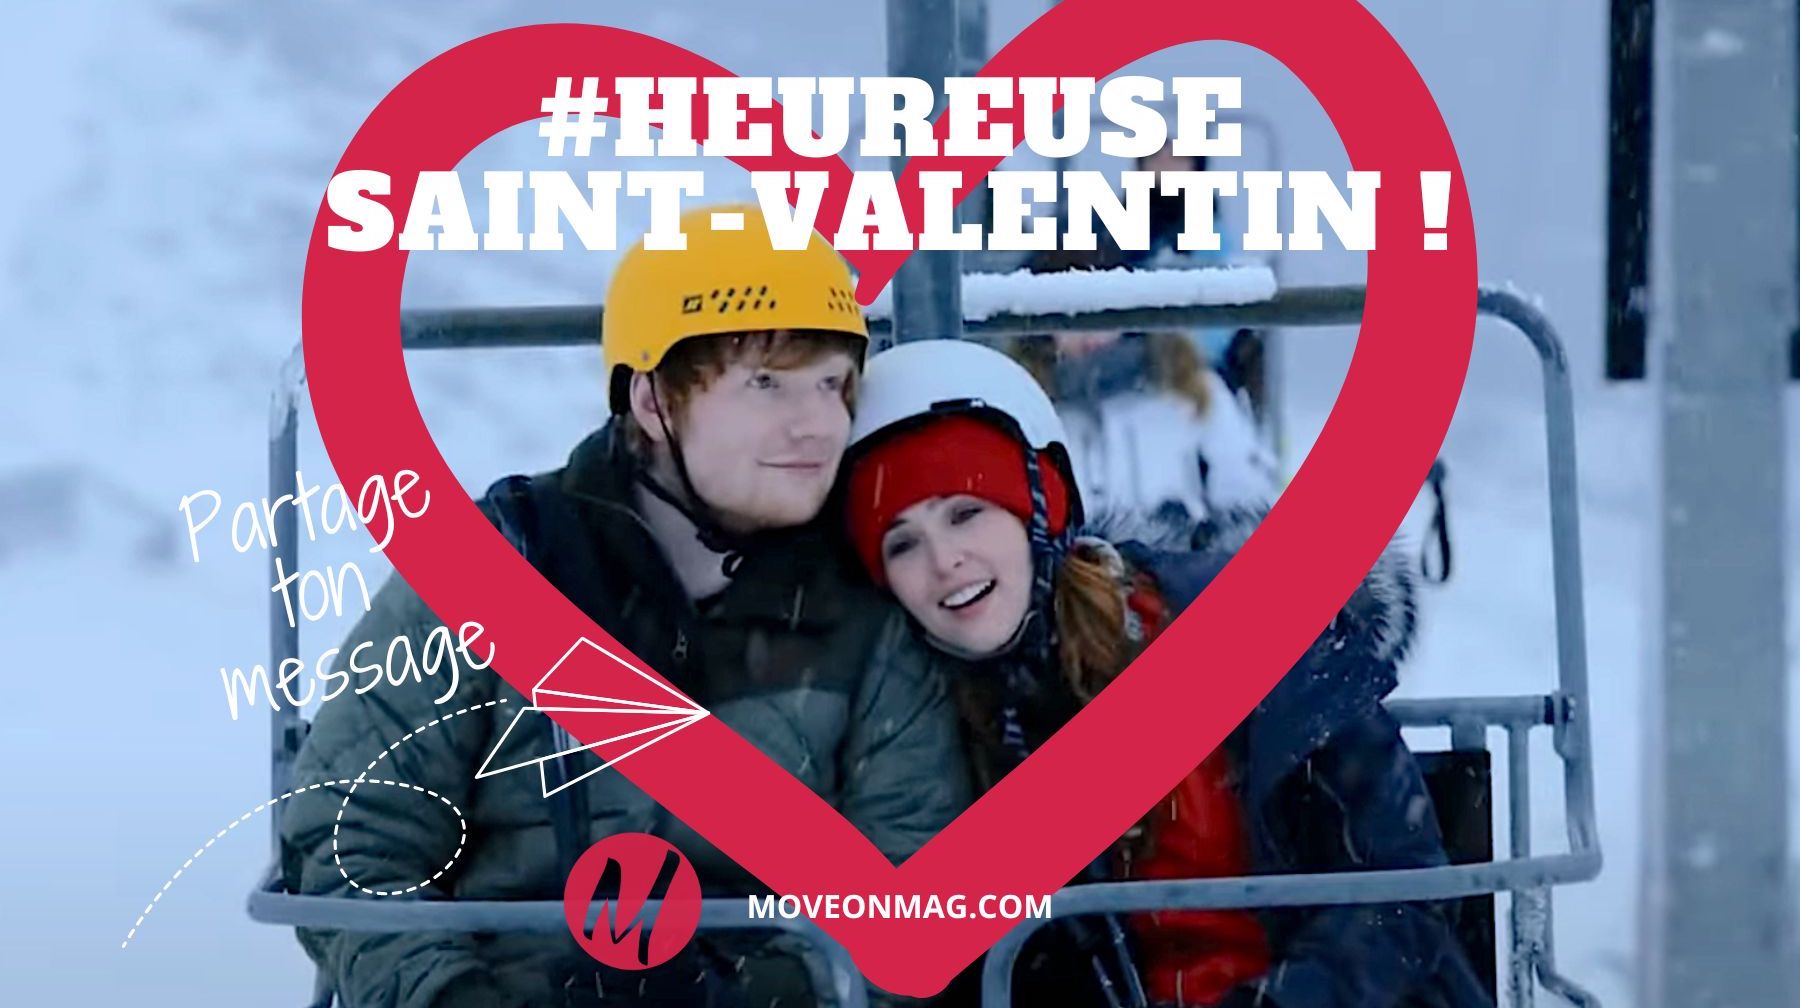 Saint-Valentin, déclarez avec nous vos sentiments en chanson ! © Clip Ed Sheeran - Perfect